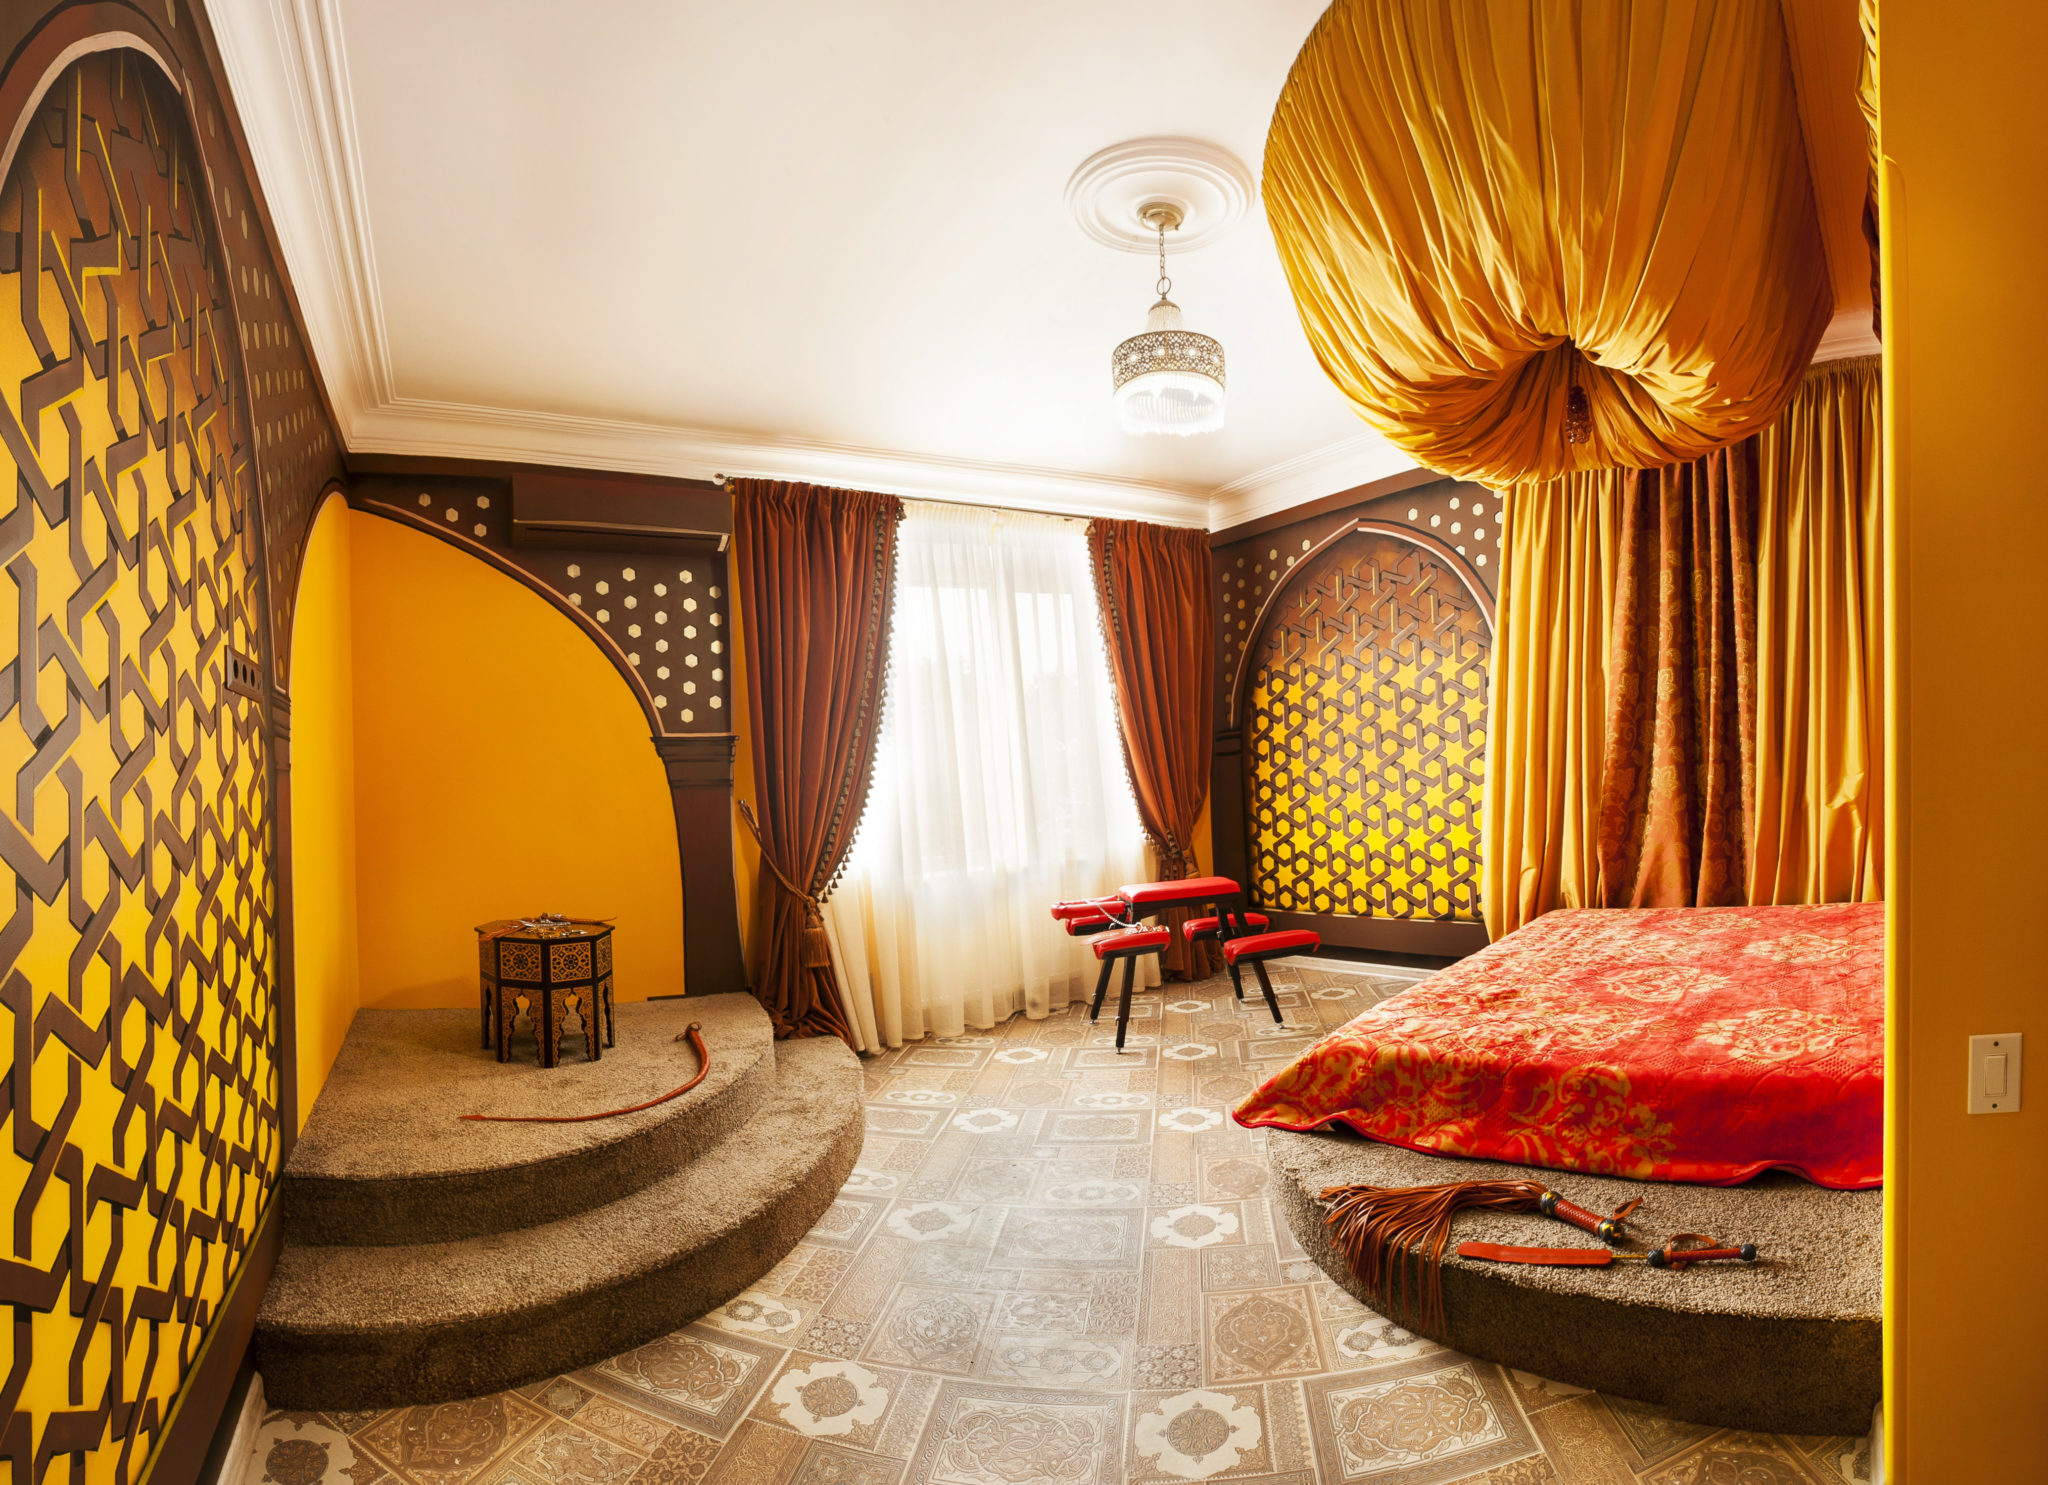  Мавританский гарем отель для секса